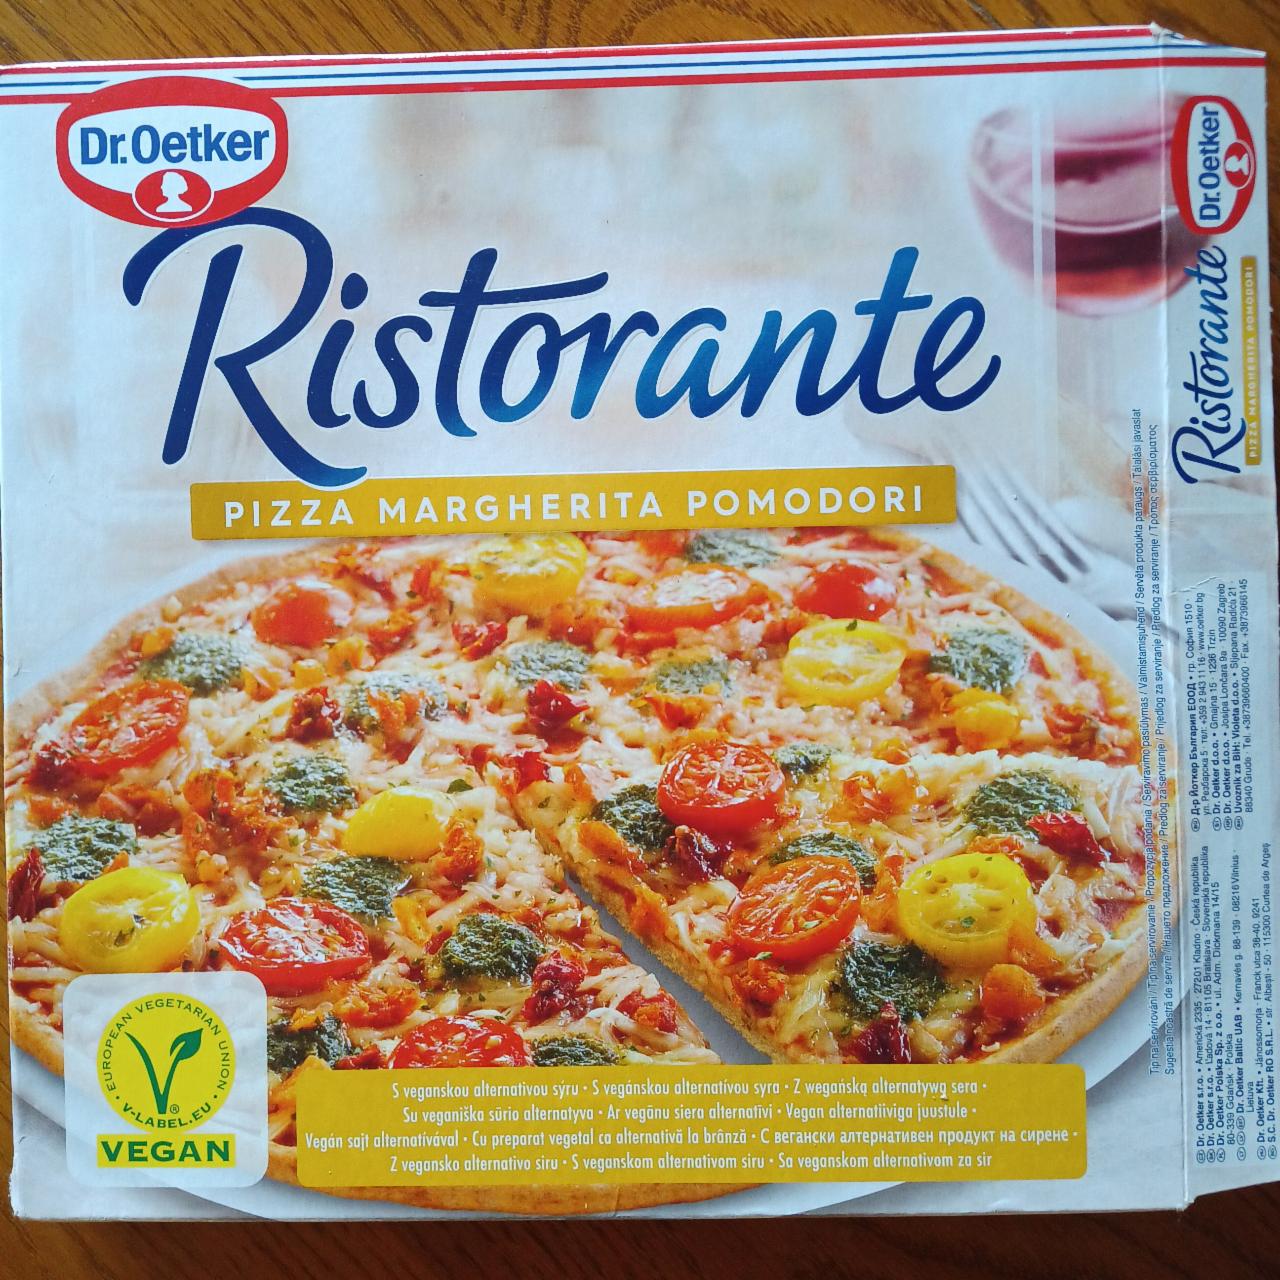 Fotografie - Ristorante Pizza margherita pomodori Dr.Oetker